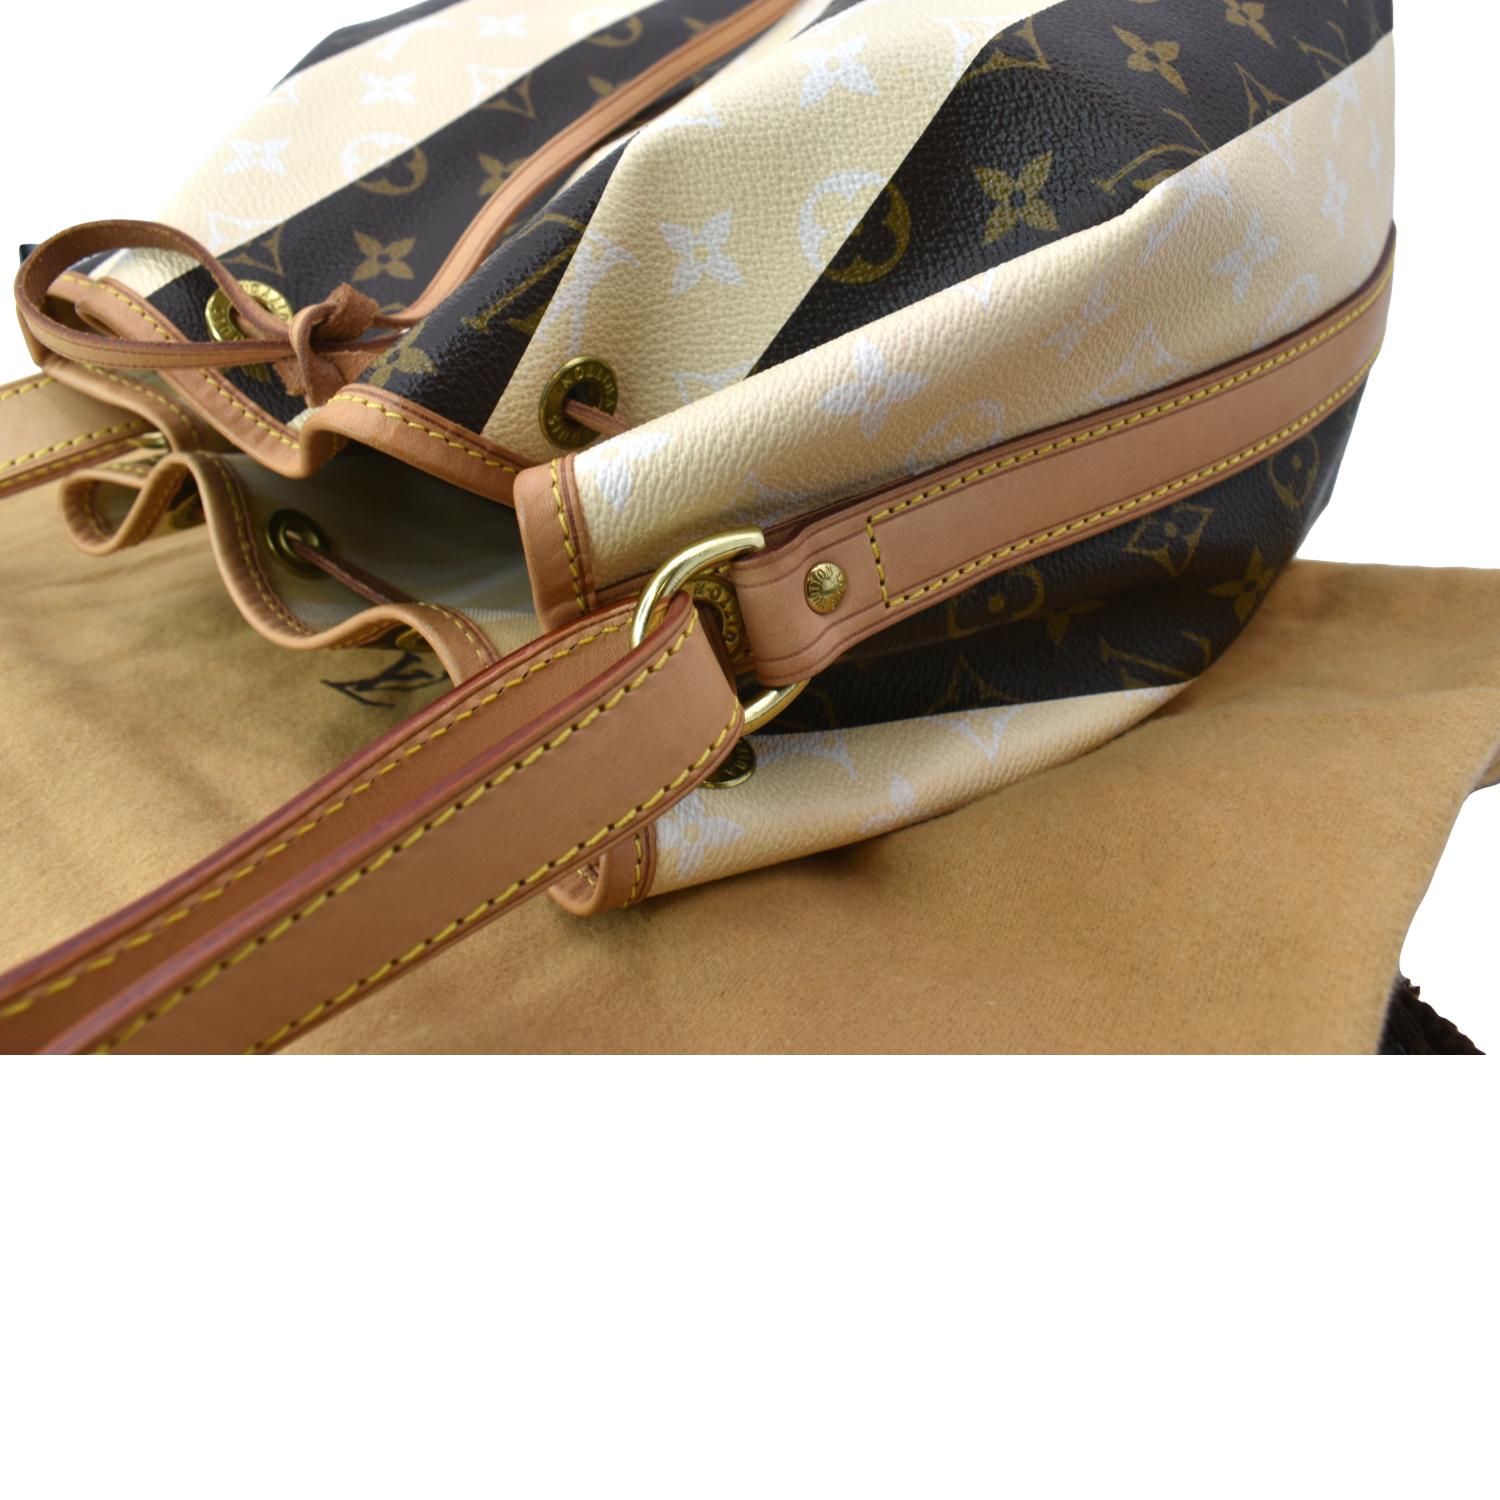 Louis Vuitton Petite Noe Drawstring Bag Monogram Rayures M40564